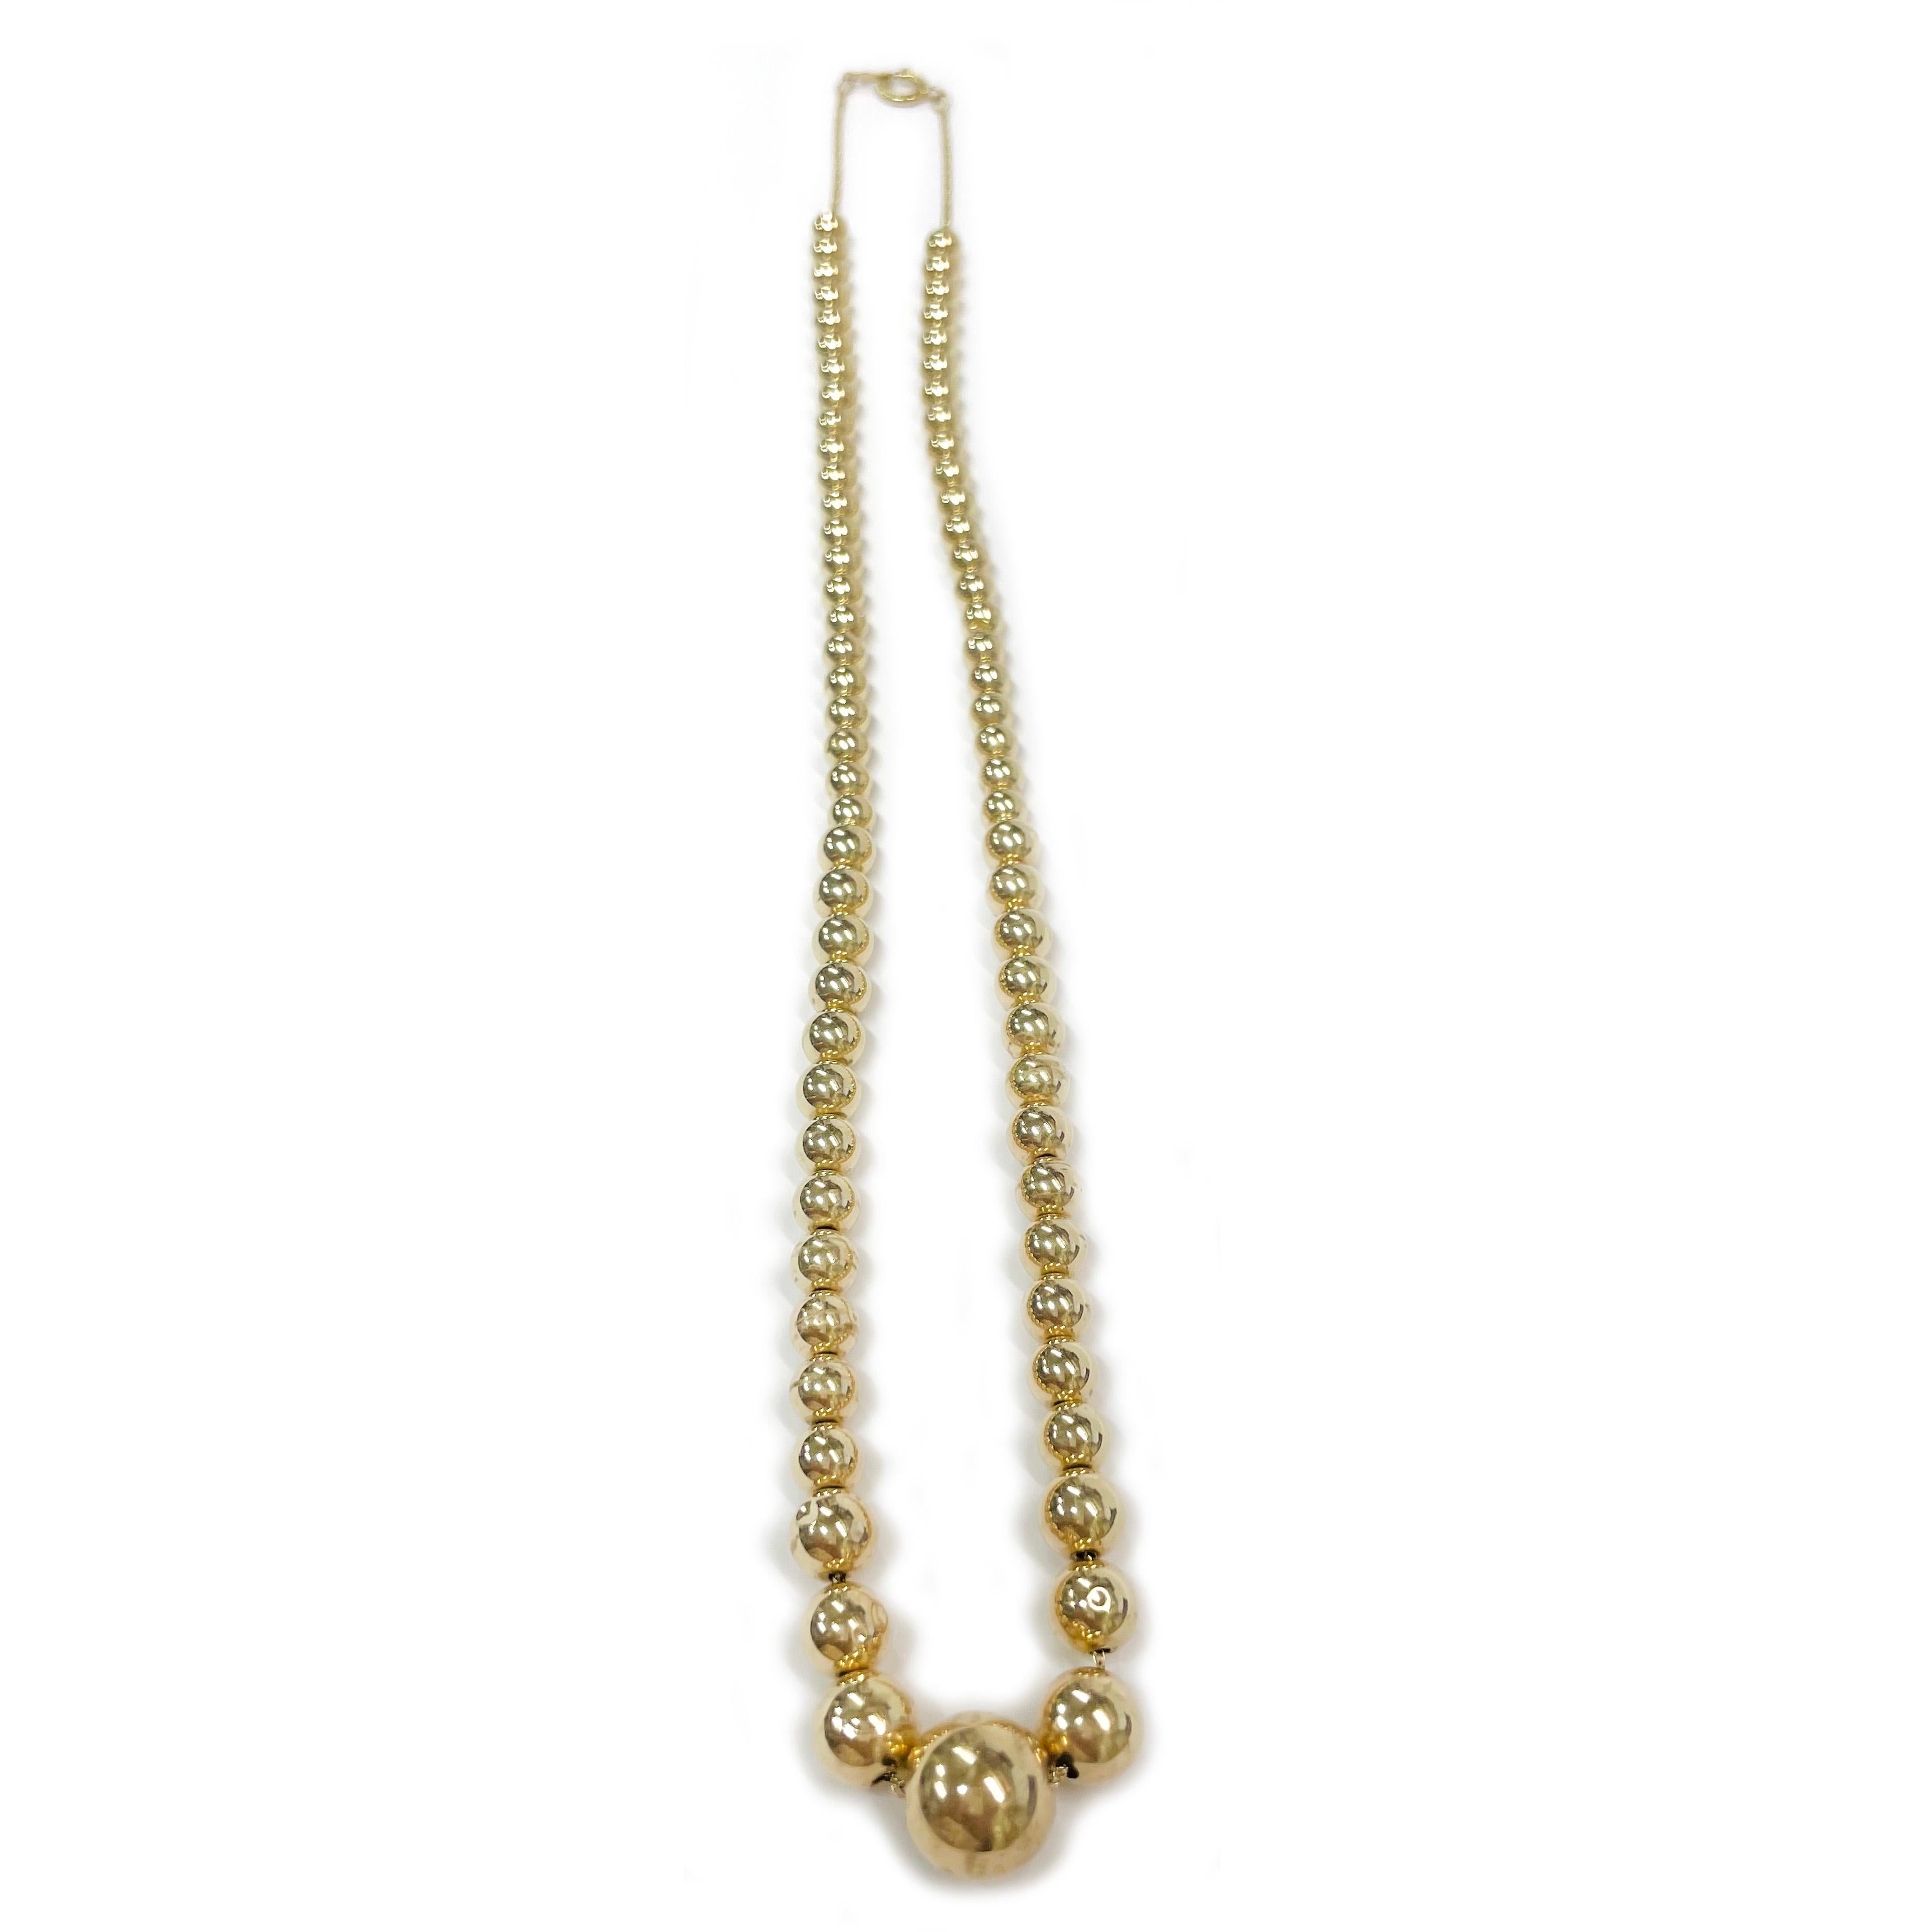 Collier de perles creuses en or jaune 14 carats. Le collier est composé d'un seul rang de soixante-quatorze perles rondes graduées en or jaune creux. La taille des perles varie de 4,85 à 11 mm. Les perles sont suspendues à une chaîne à maillons en